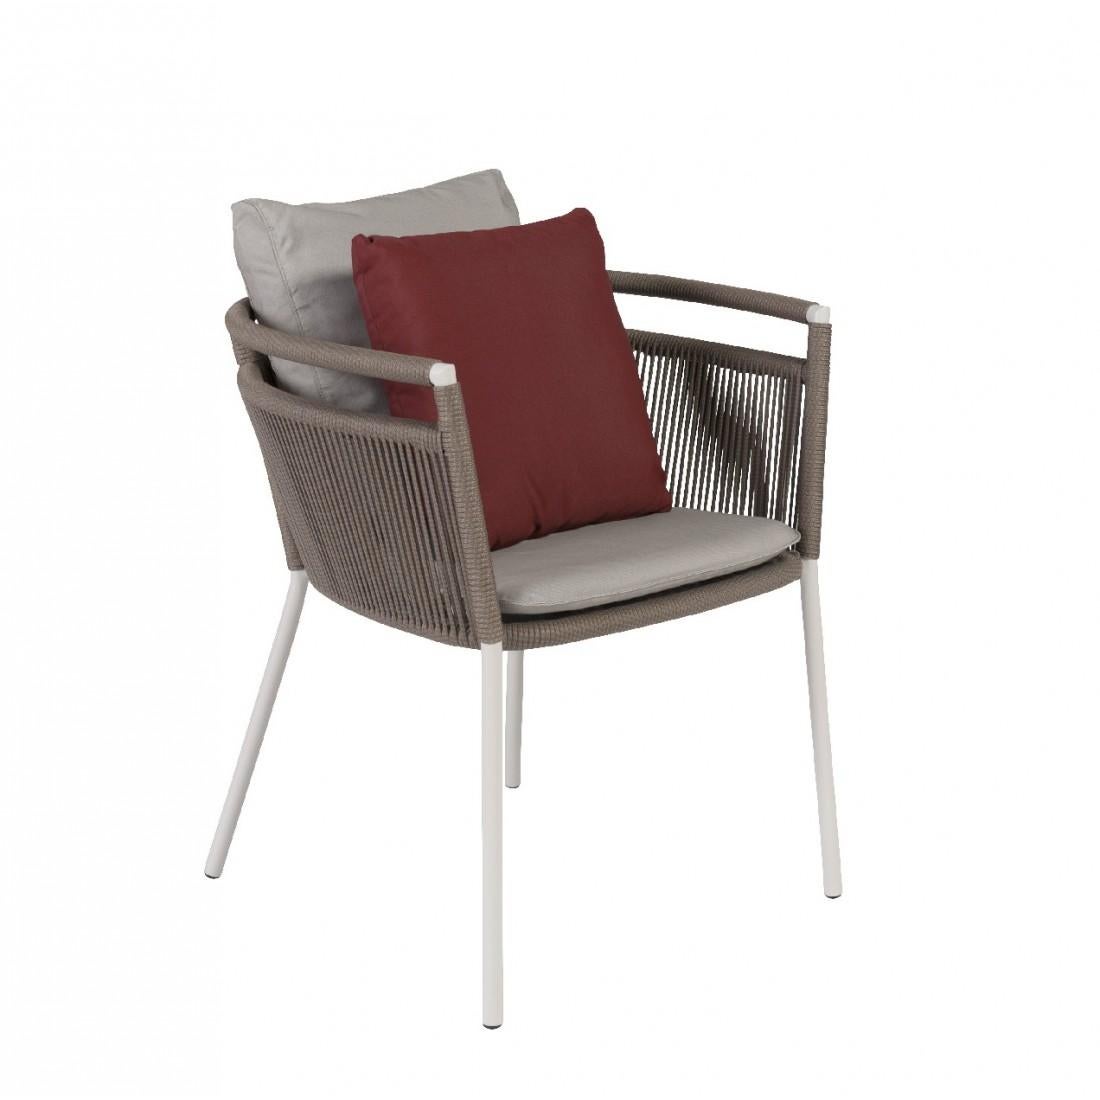 Set aus sechs Design-Sesseln für den Außenbereich mit Aluminiumstruktur und Seilgeflecht. Robustheit und Leichtigkeit, hohe Qualität, widerstandsfähig und weich im Griff, so poetisch, so luftig und design.